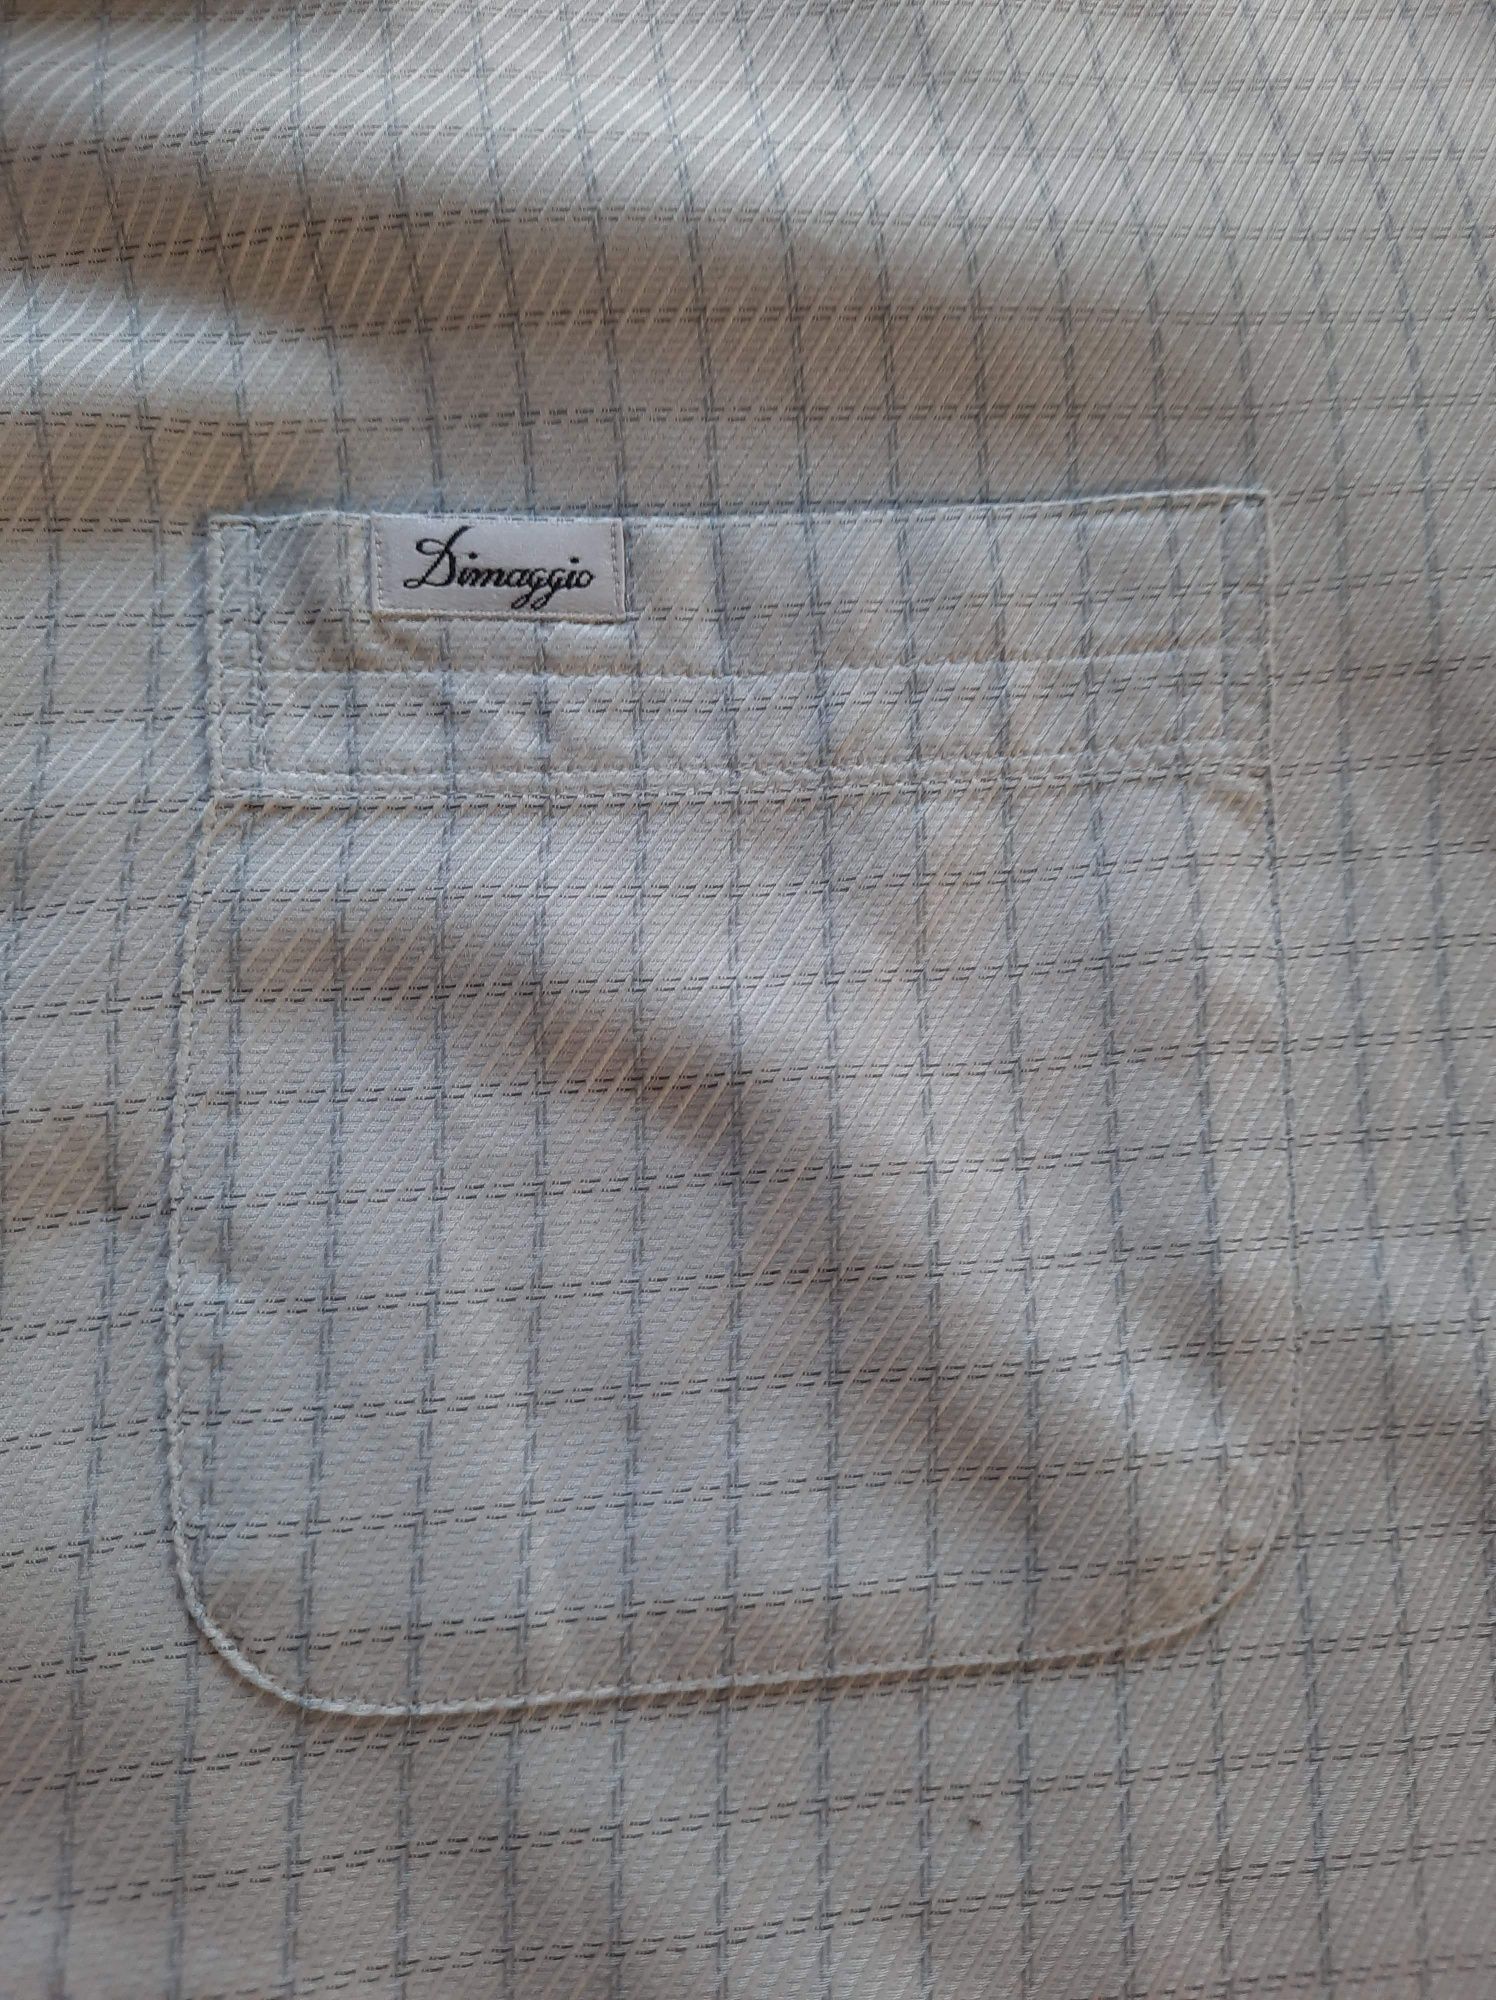 Koszula męska długi rękaw Dimaggio XL biała w kratkę